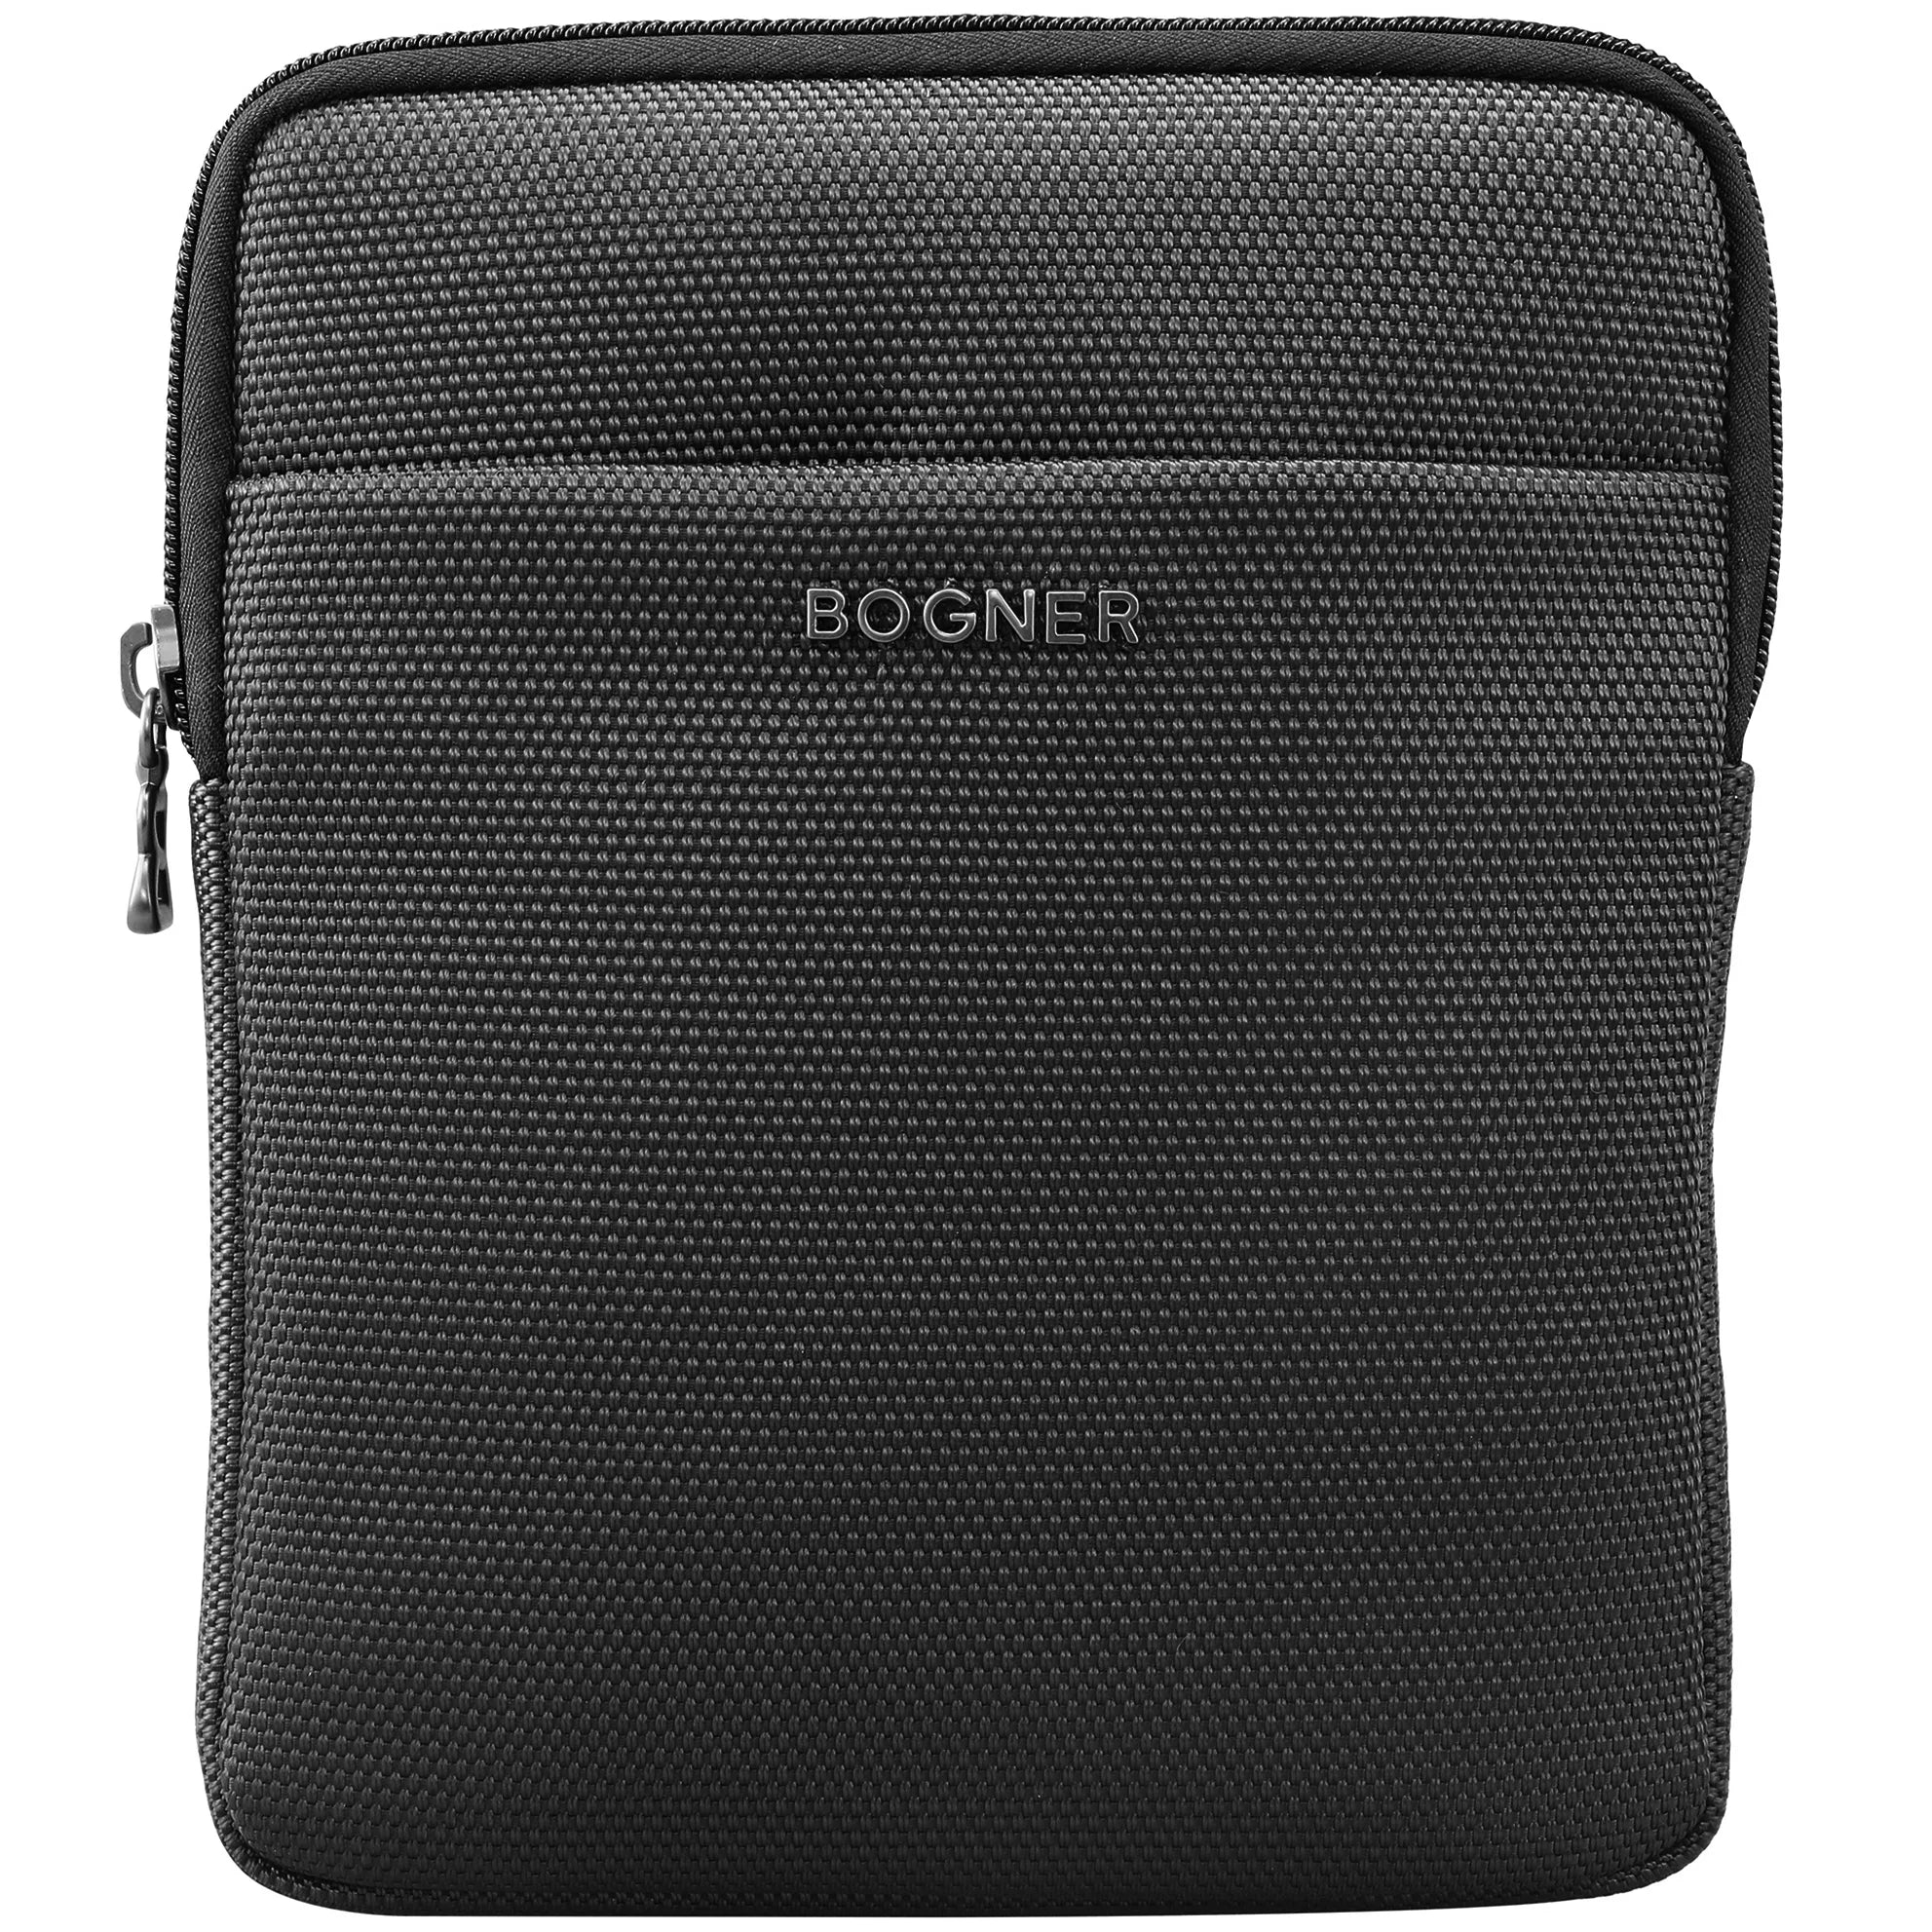 Bogner Keystone Frank Shoulderbag XSVZ 1 24 cm - Black